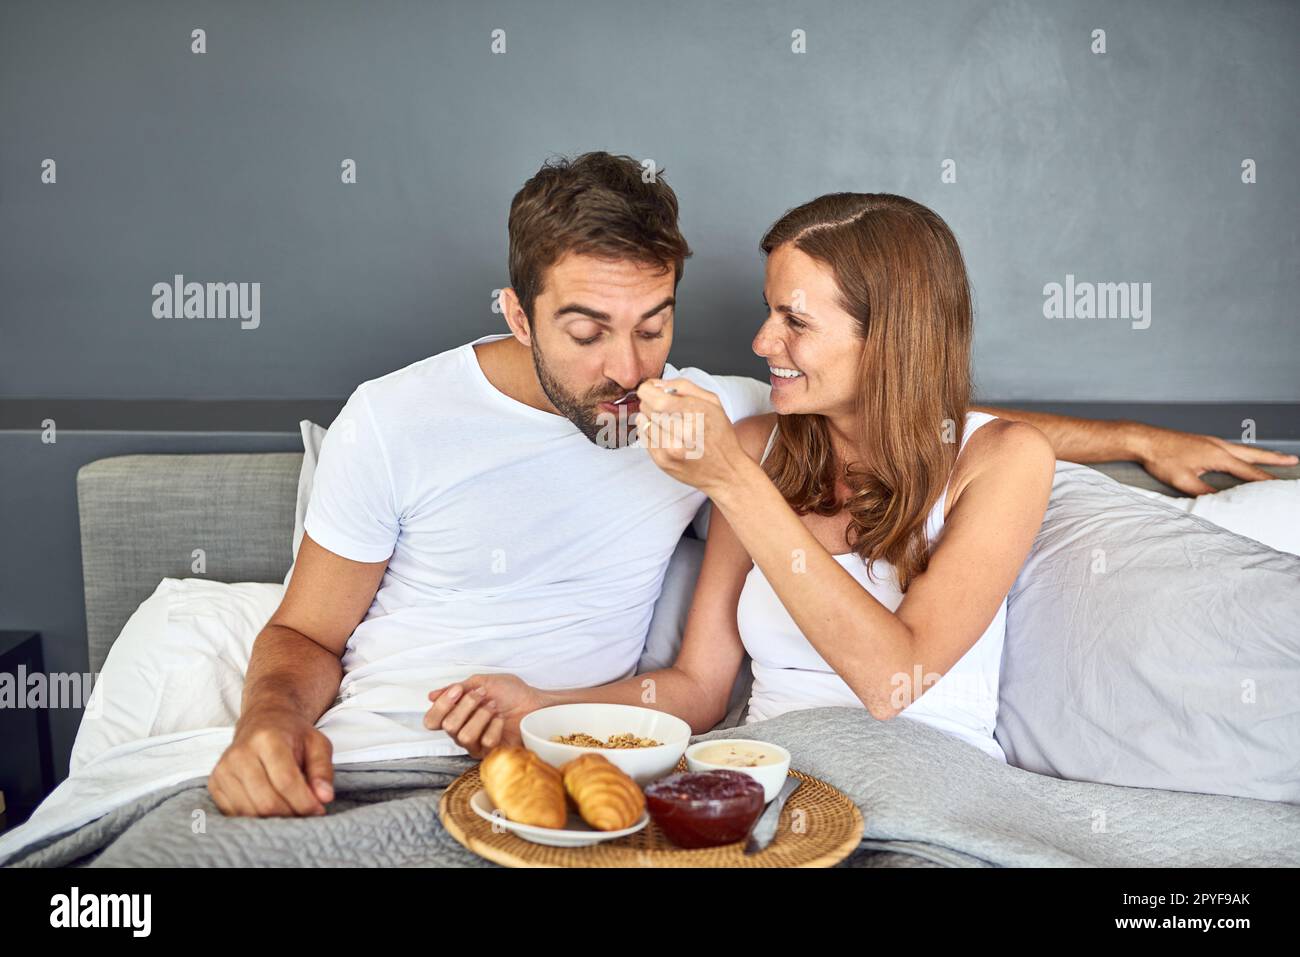 Nichts ist besser als ein gemütliches Frühstück im Bett. Ein glückliches junges Paar, das zu Hause zusammen im Bett frühstückt. Stockfoto